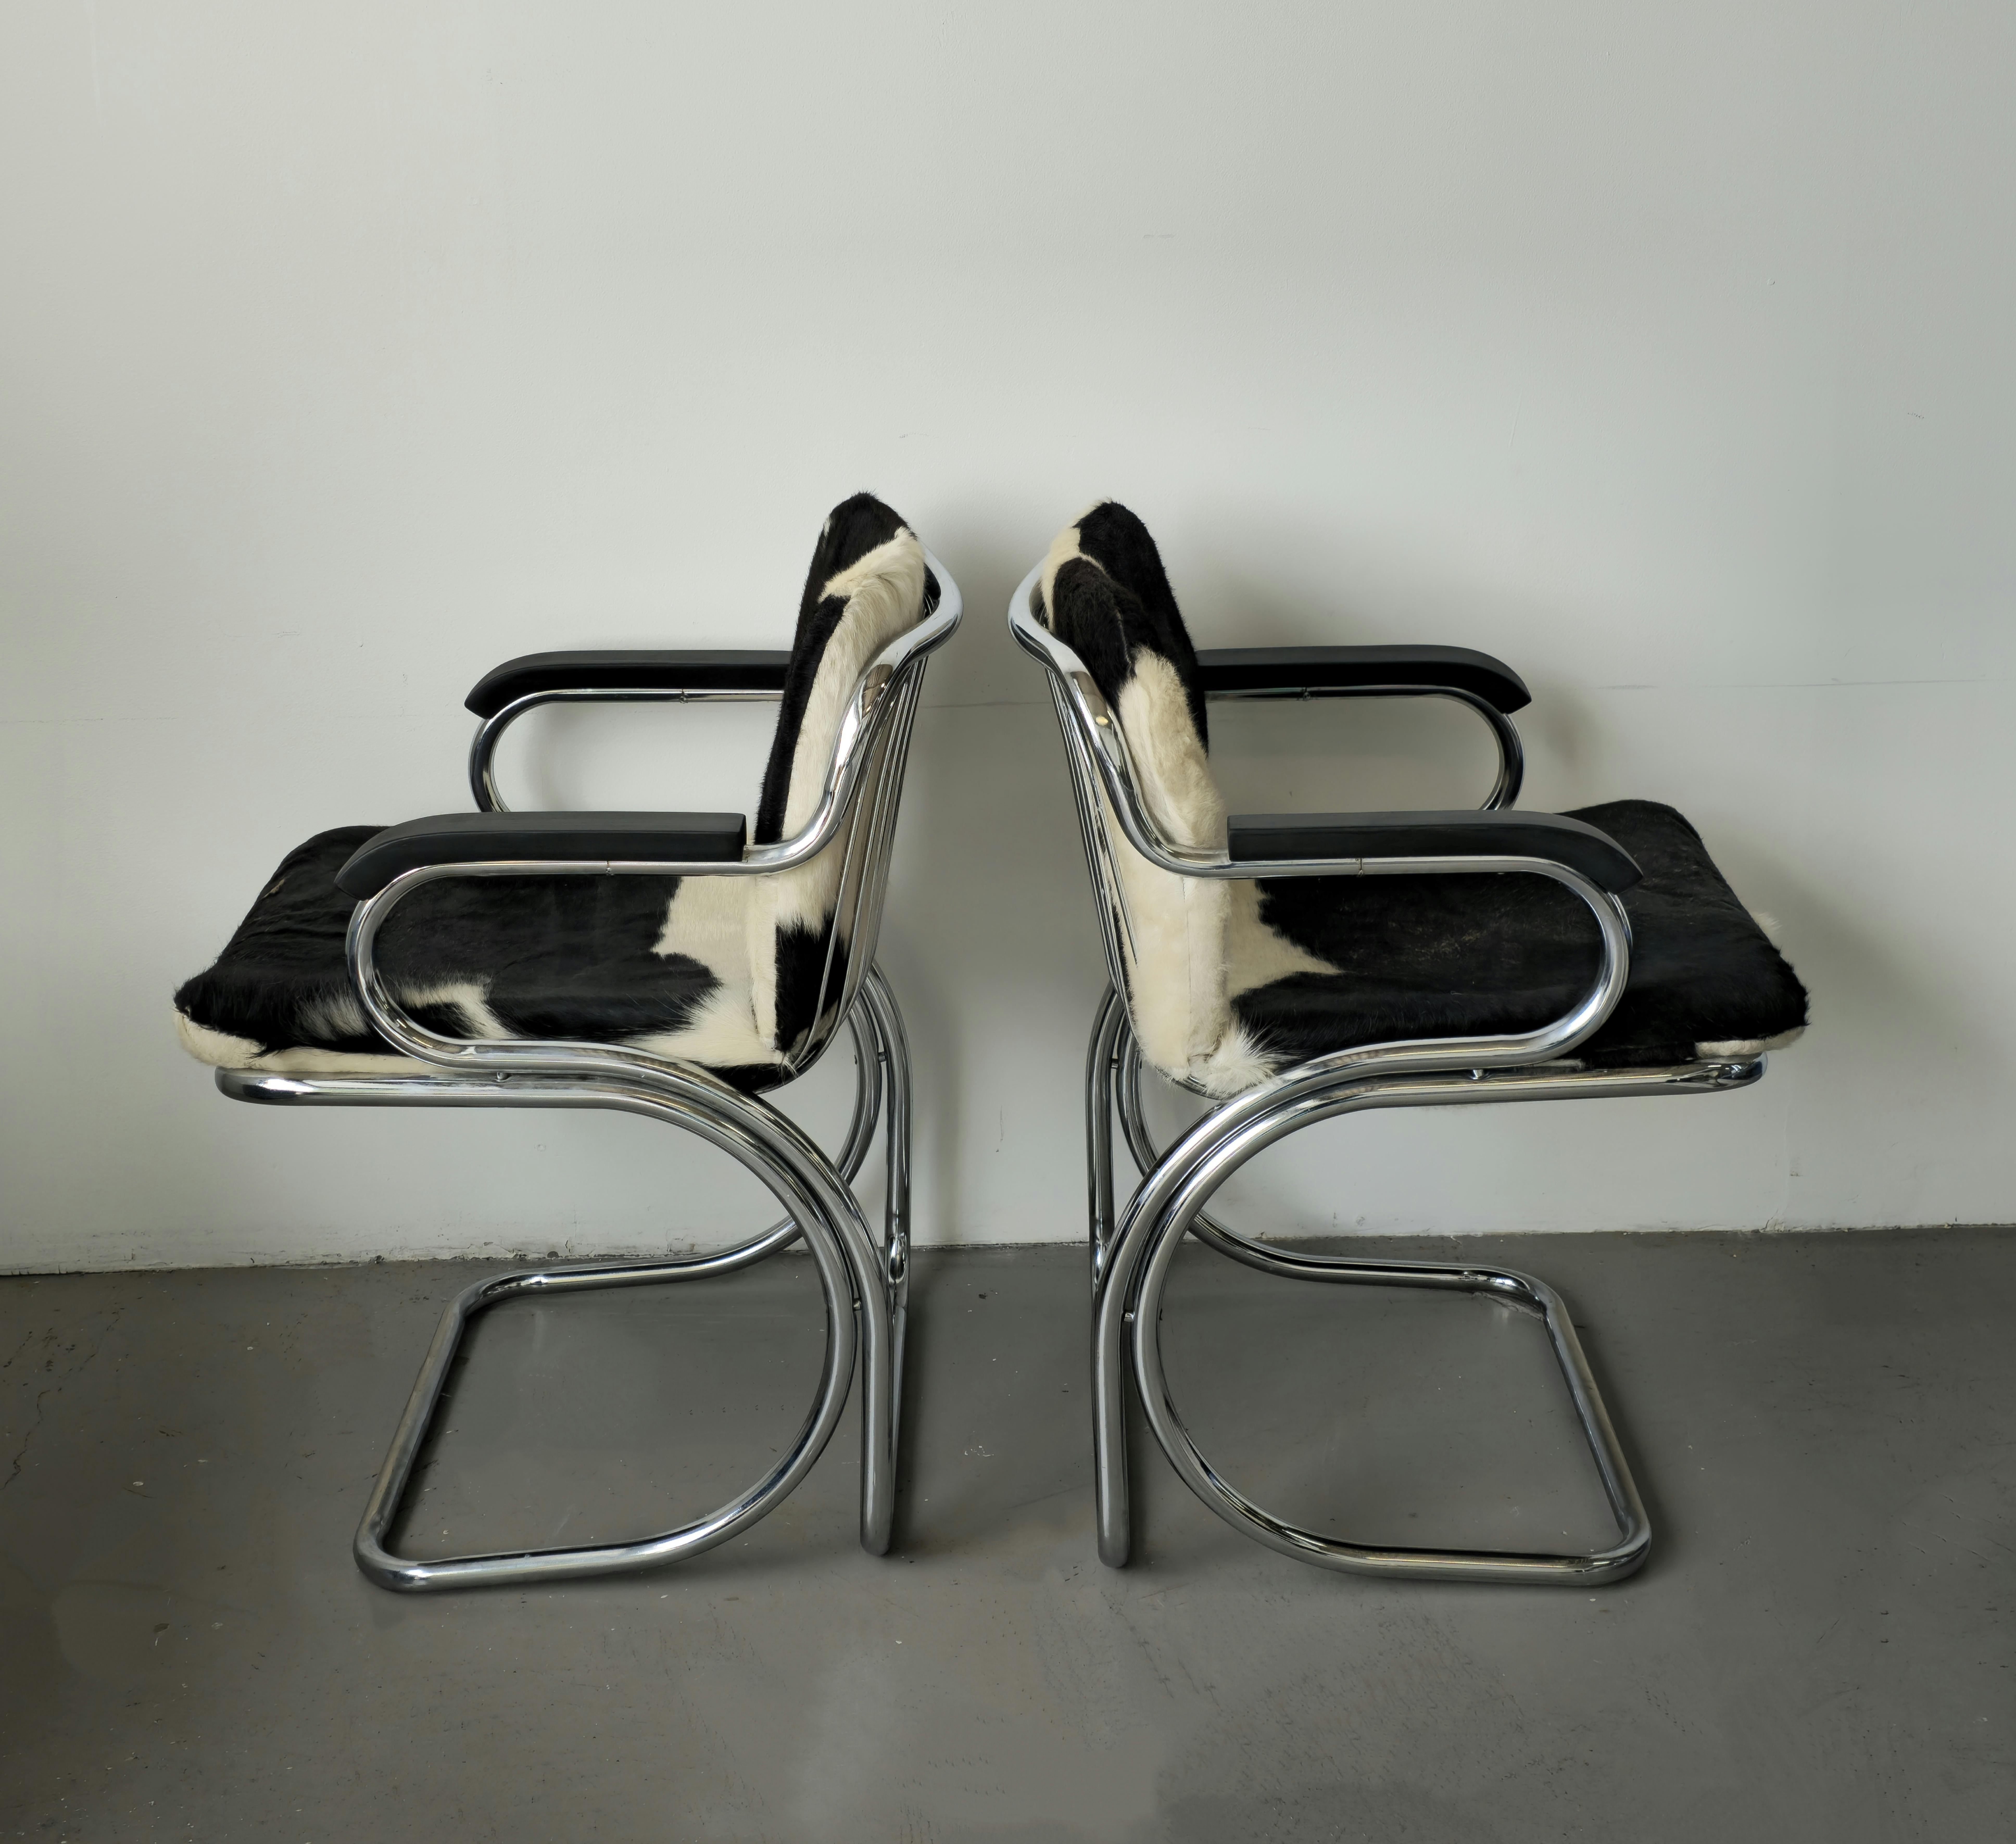 Superbes chaises sculpturales en chrome de Gastone Rinaldi fabriquées en Italie dans les années 1970. Ces fauteuils en porte-à-faux sont dotés d'un corps chromé et de coussins en cuir de vache. Les accoudoirs ont été repeints avec une teinture noire